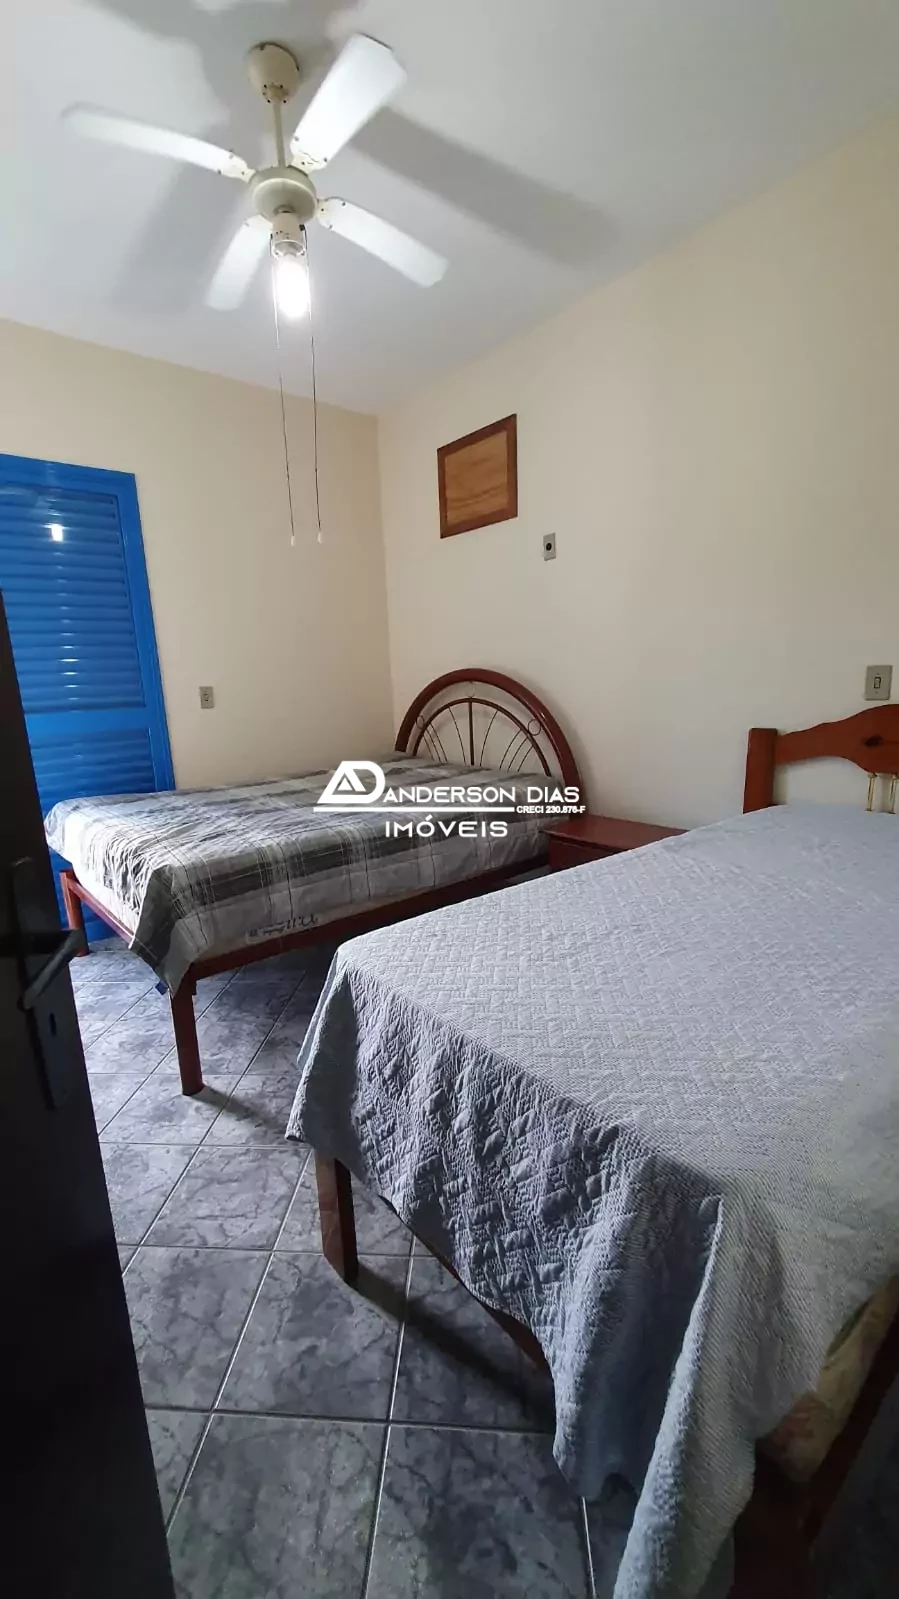 Apartamento com 2 dormitórios, 1 suíte para locação defintiva Por R$ 2.500,00- Prainha- Caraguatatuba-SP